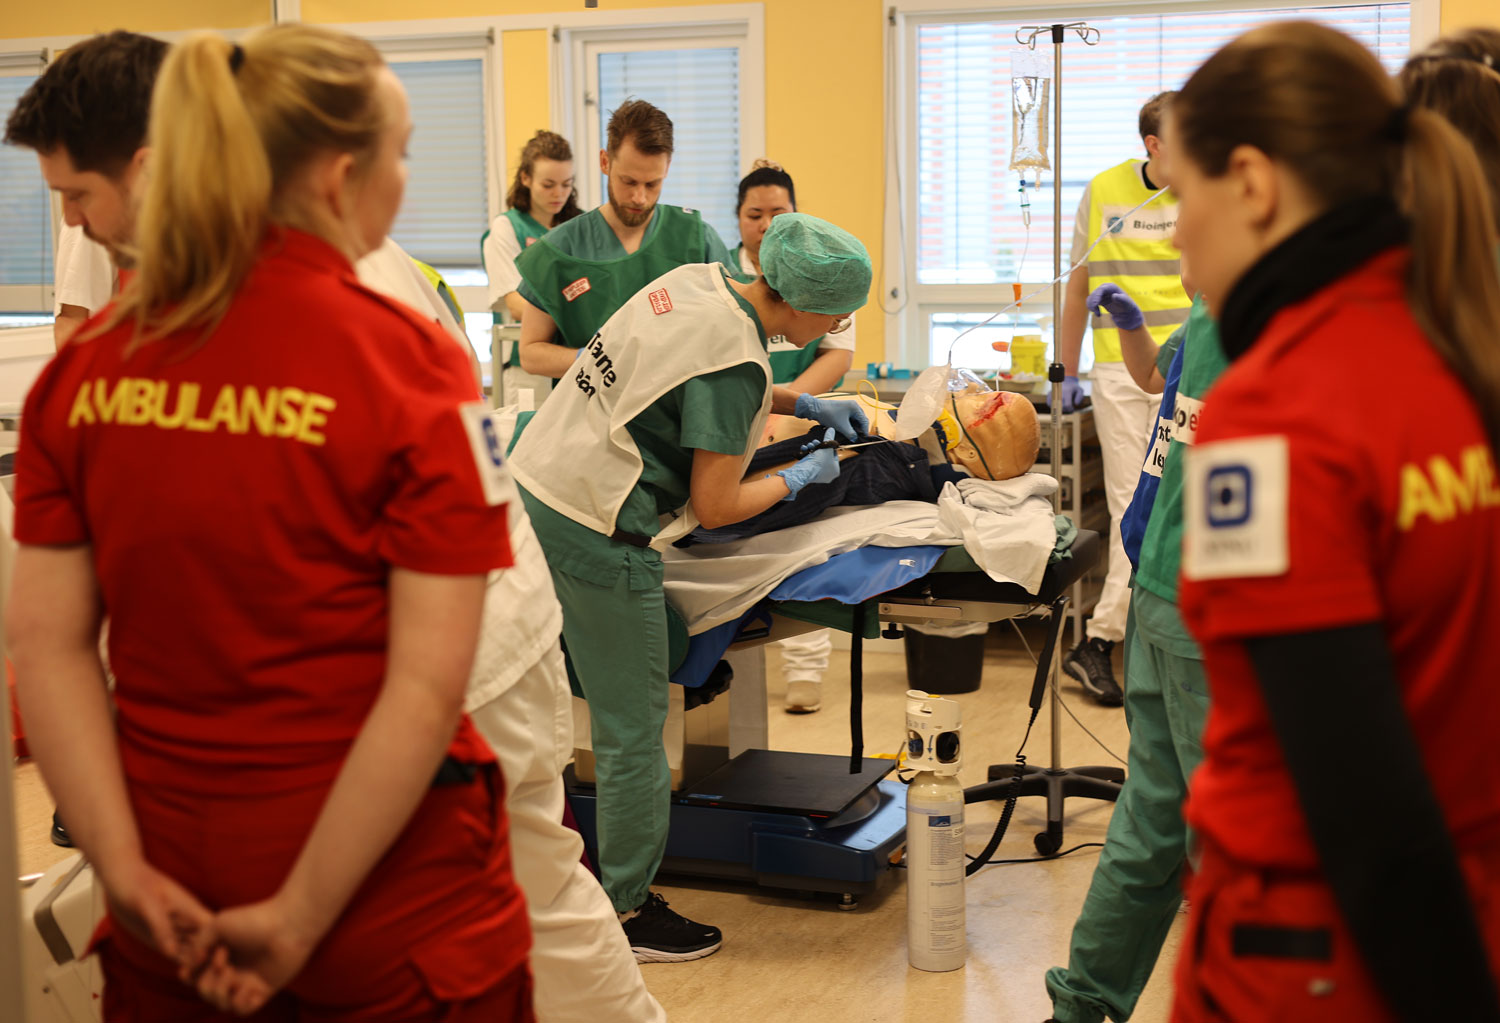 Fra NTNU på Gjøvik der sykepleiere og paramedisinere utdannes. Illustrasjonsfoto: Jørn Finsrud.